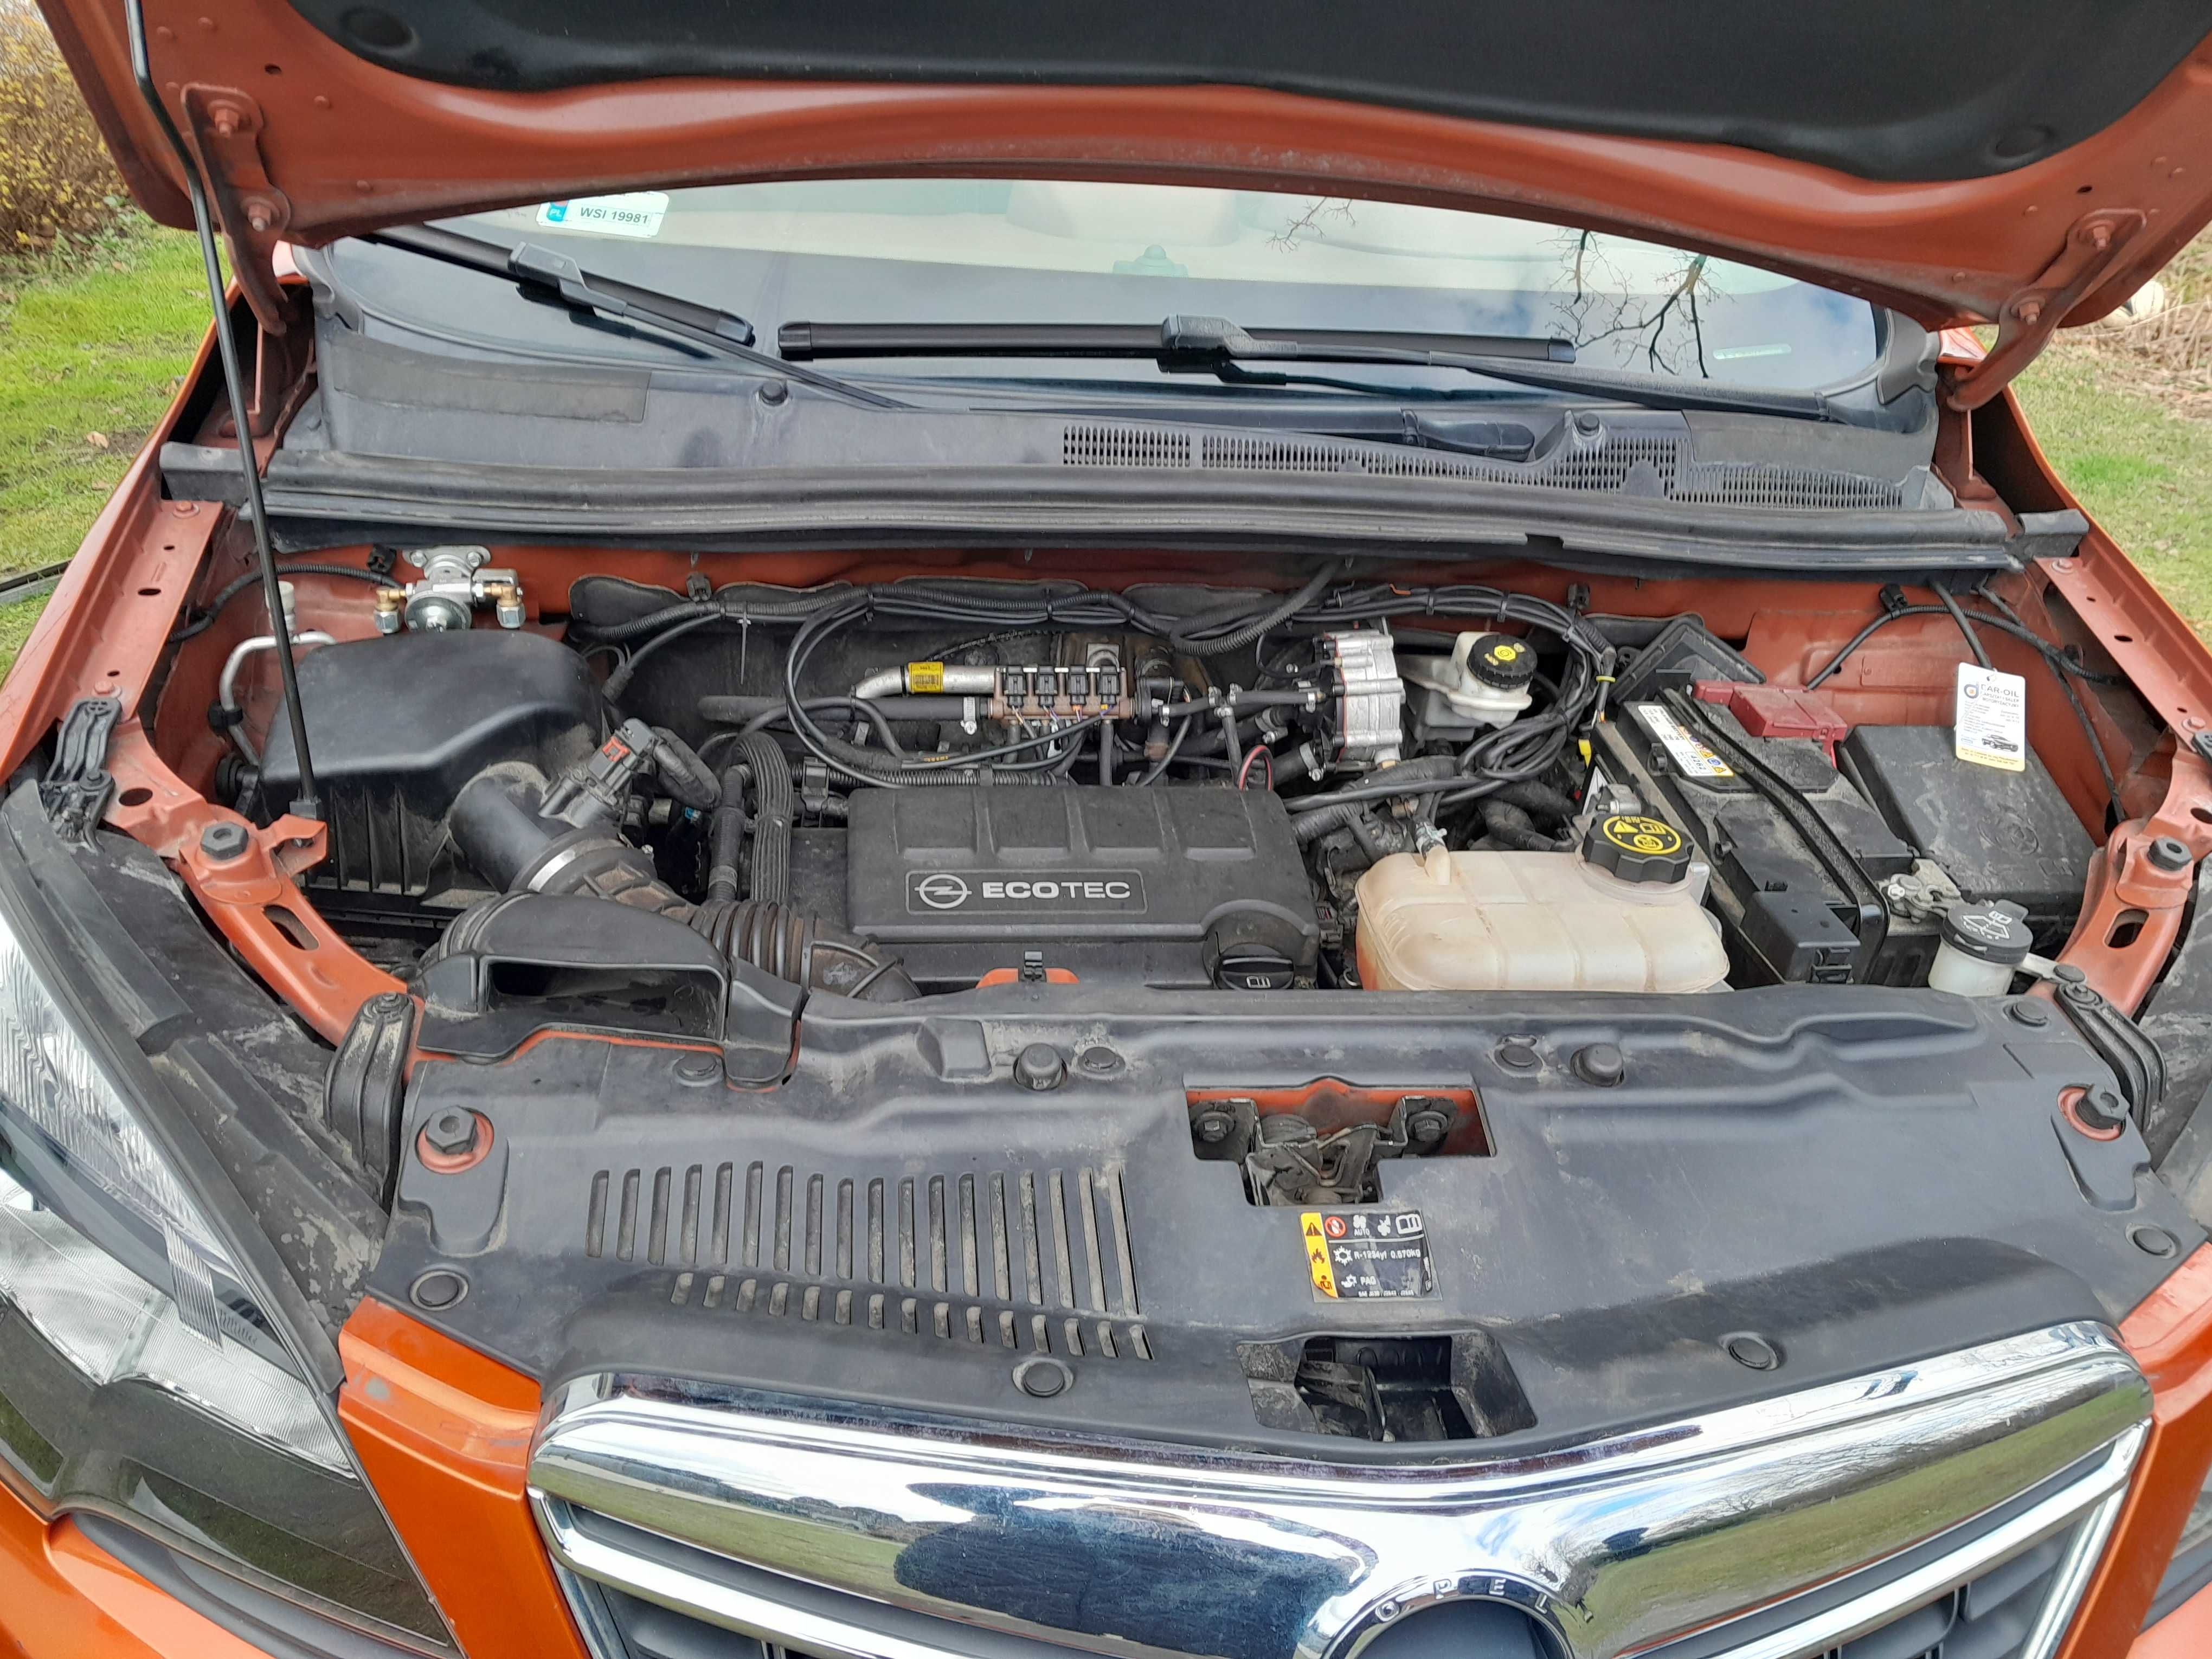 Opel mokka 2015r. 1,4 4X4 Turbo benzyna/gaz + komplet kół zimowych